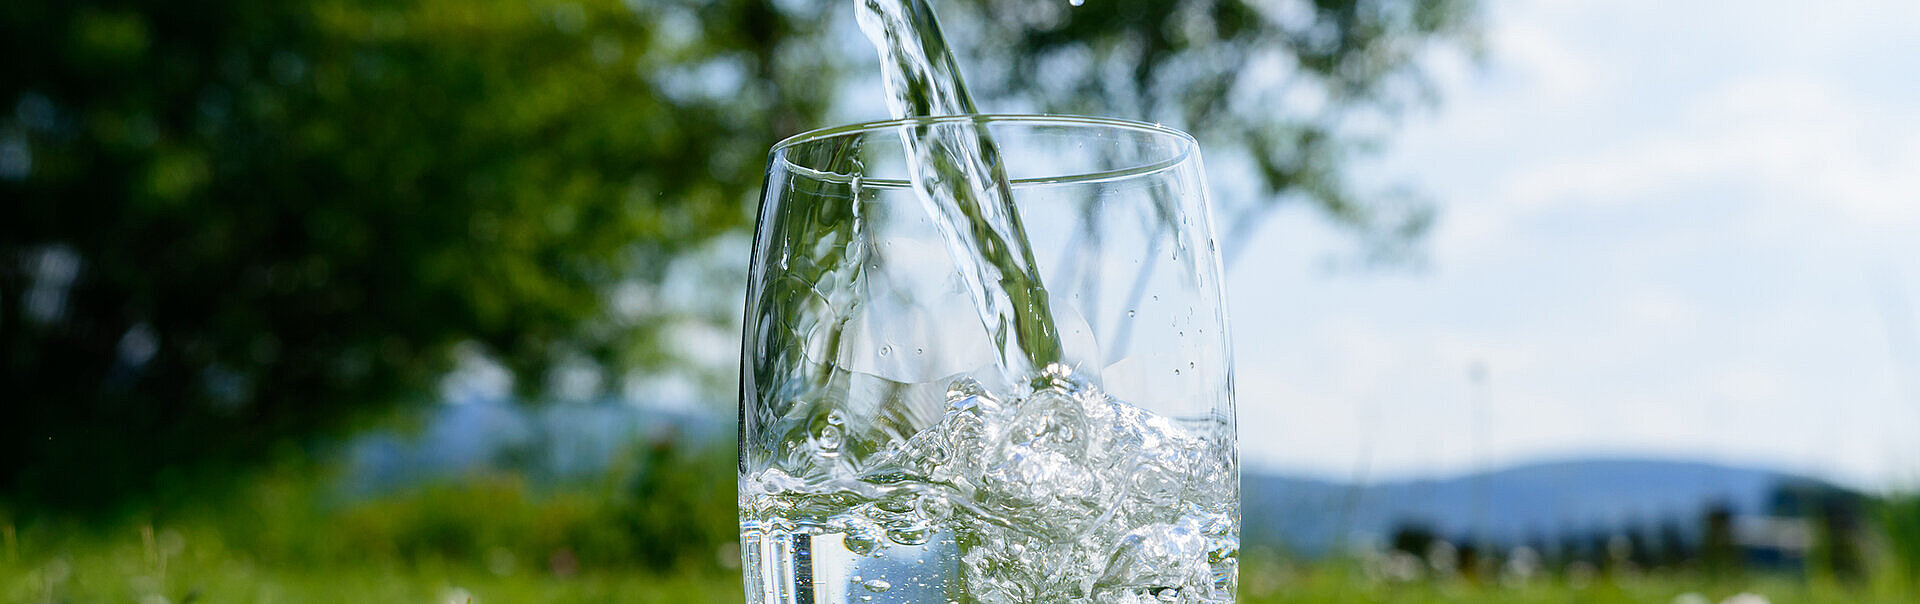 Bild: Wasser in einem Glas